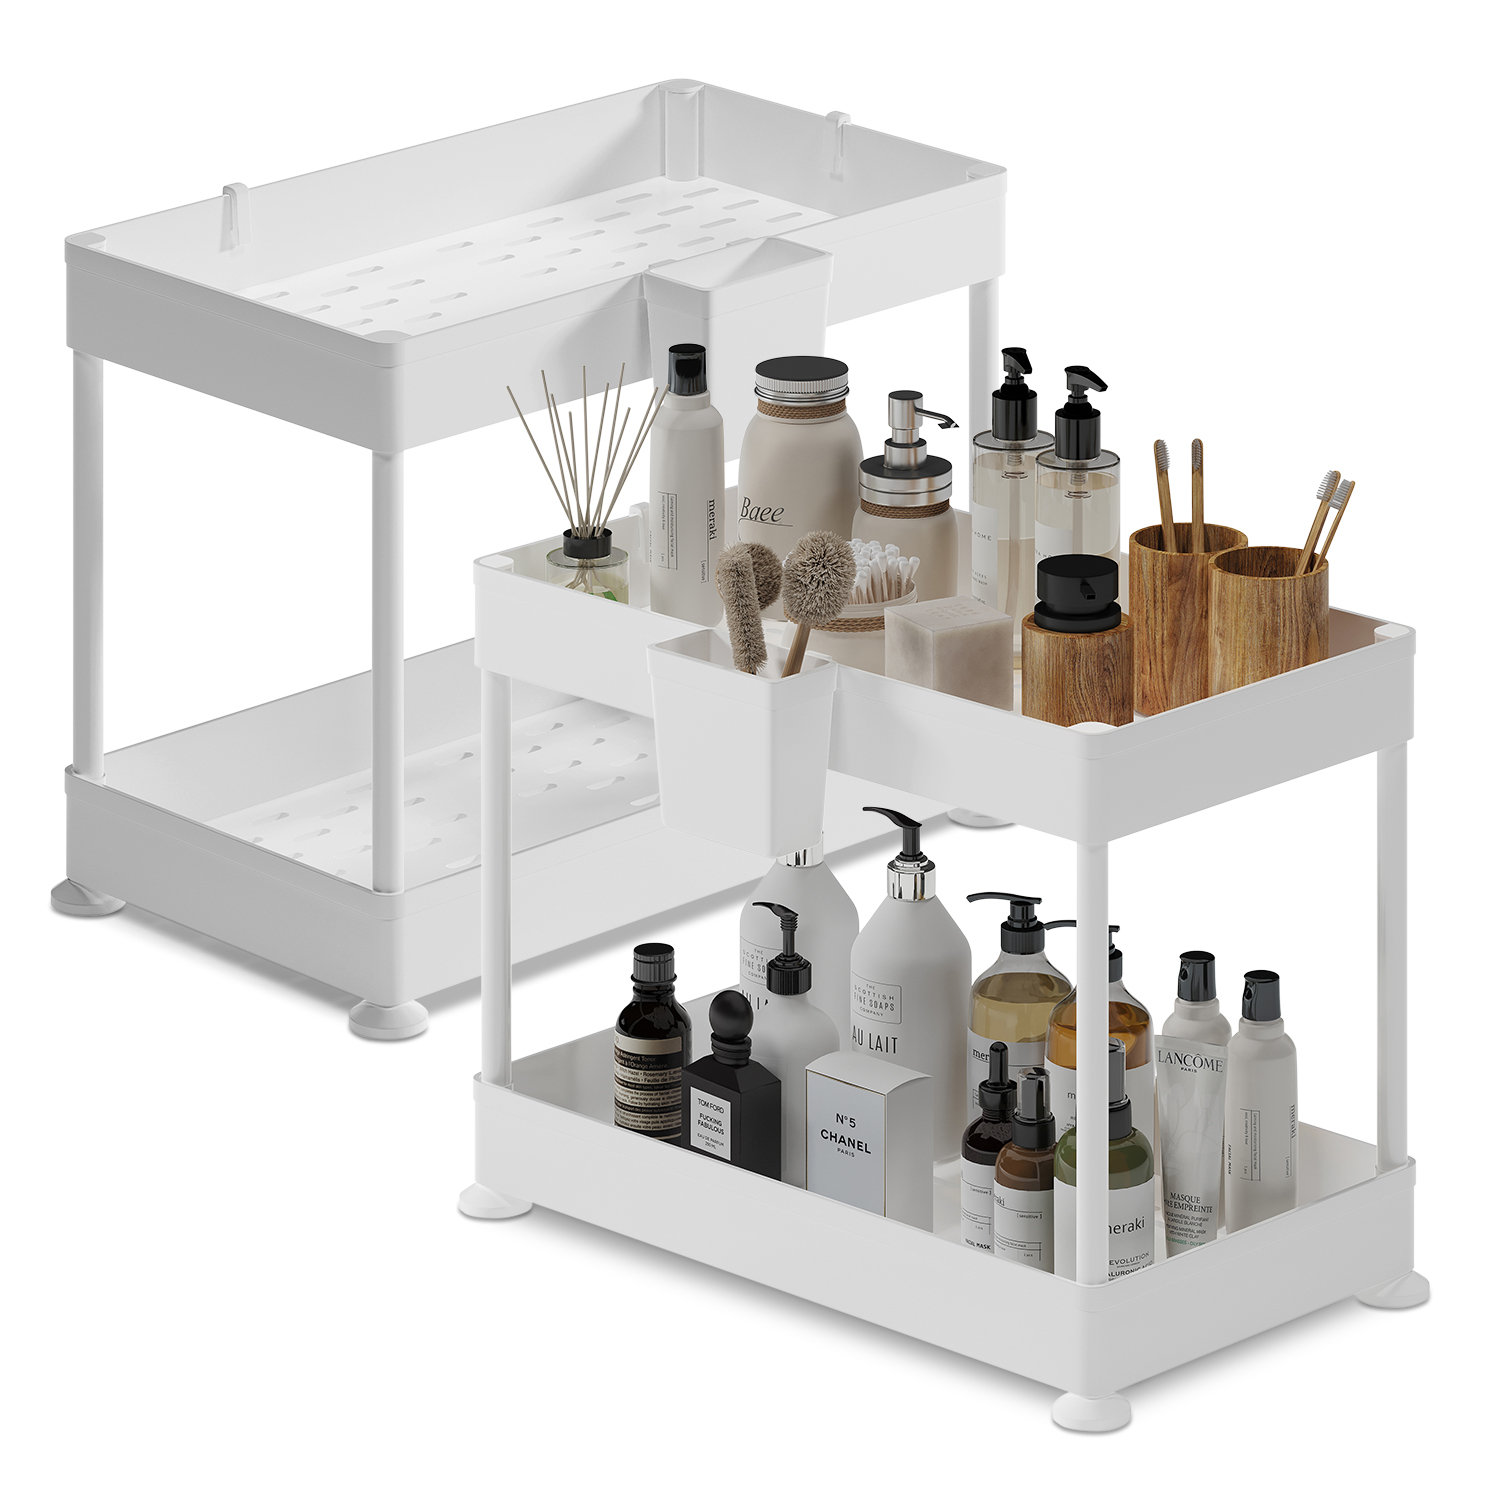 https://assets.wfcdn.com/im/05376540/compr-r85/2297/229792179/storagebud-non-slip-grip-kitchen-under-sink-organizer-bathroom-cabinet-organizer-with-side-caddy.jpg